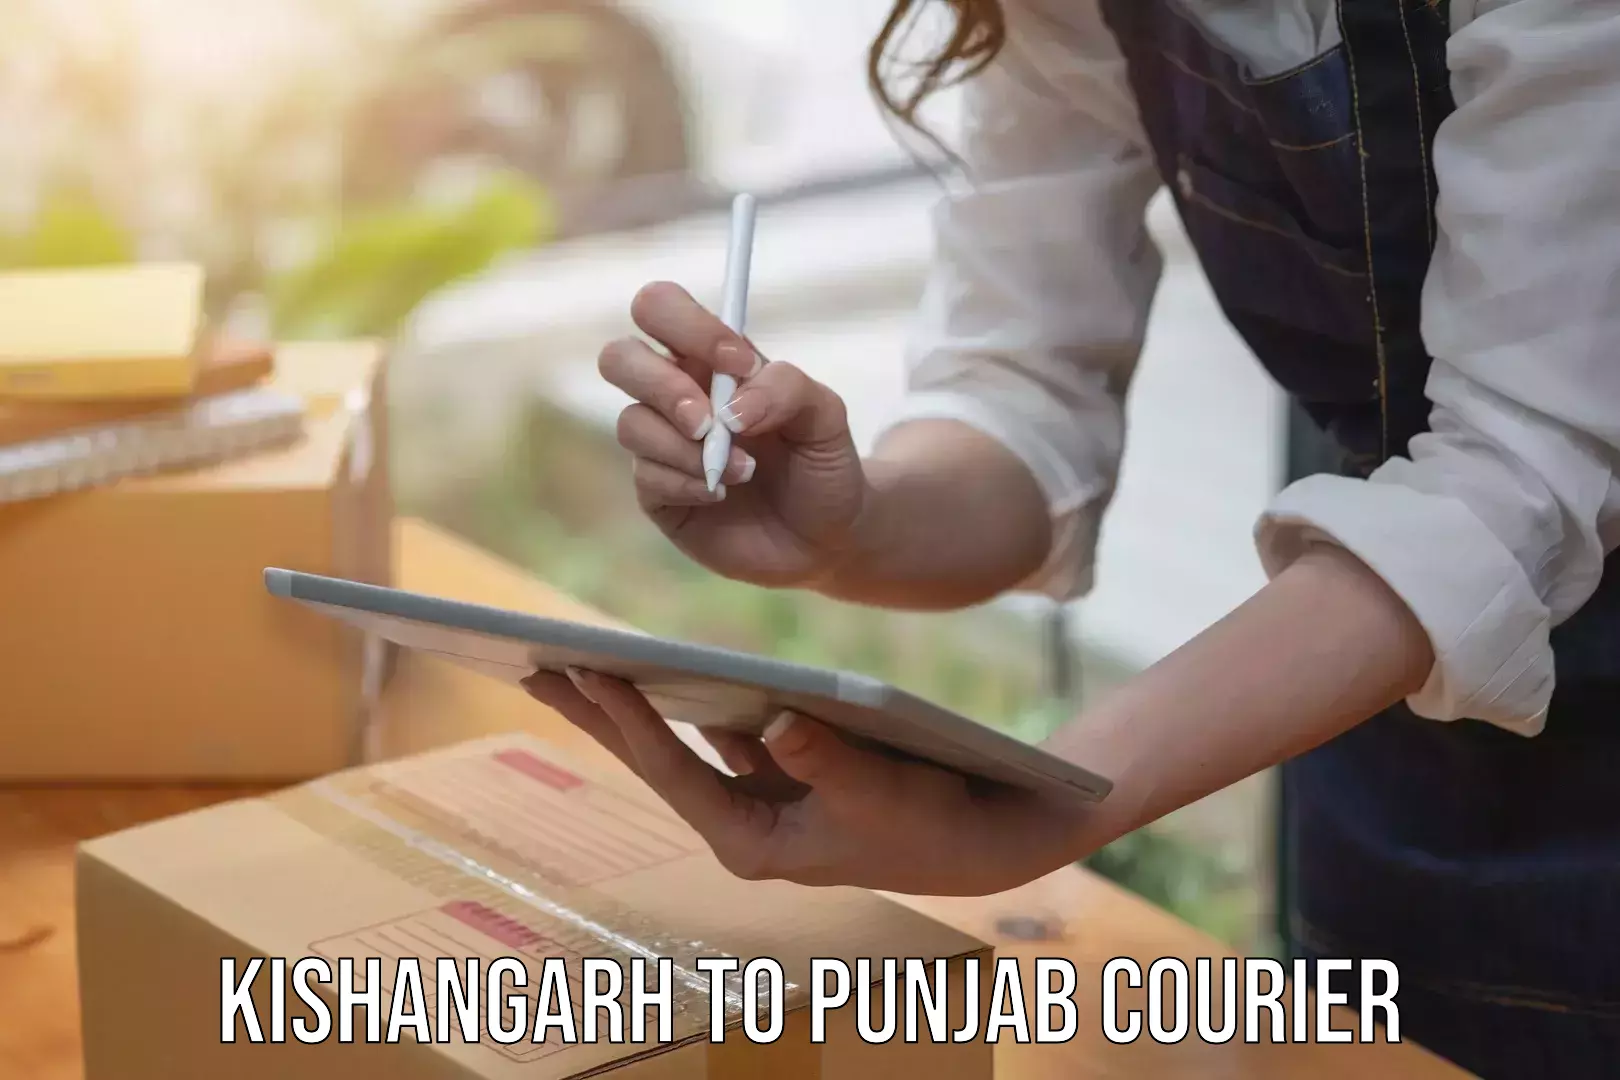 Full-service courier options Kishangarh to Nawanshahr